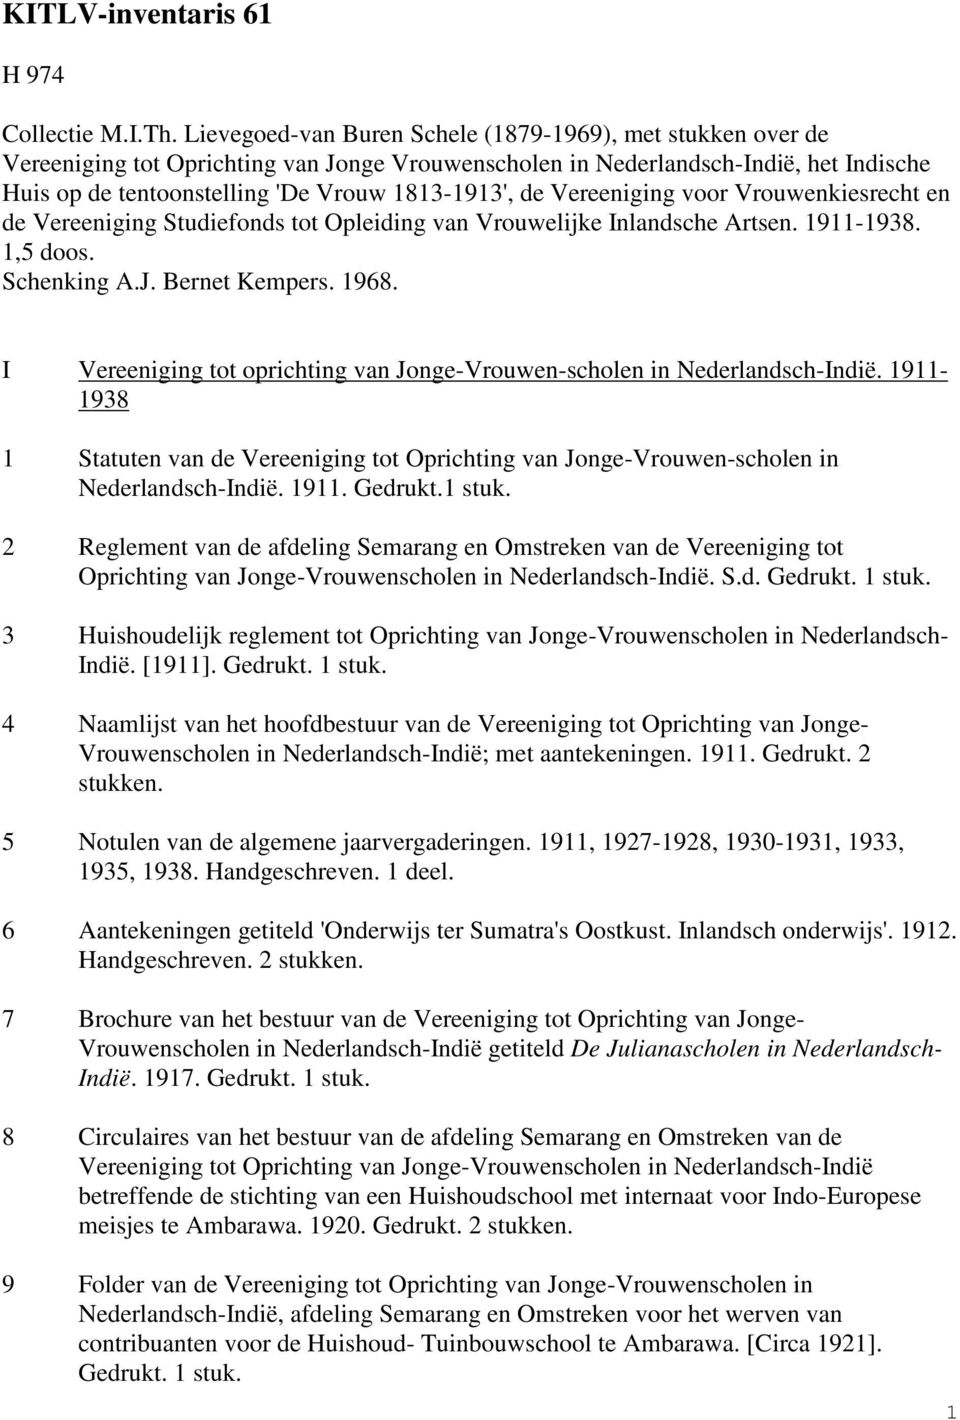 Vereeniging voor Vrouwenkiesrecht en de Vereeniging Studiefonds tot Opleiding van Vrouwelijke Inlandsche Artsen. 1911-1938. 1,5 doos. Schenking A.J. Bernet Kempers. 1968.